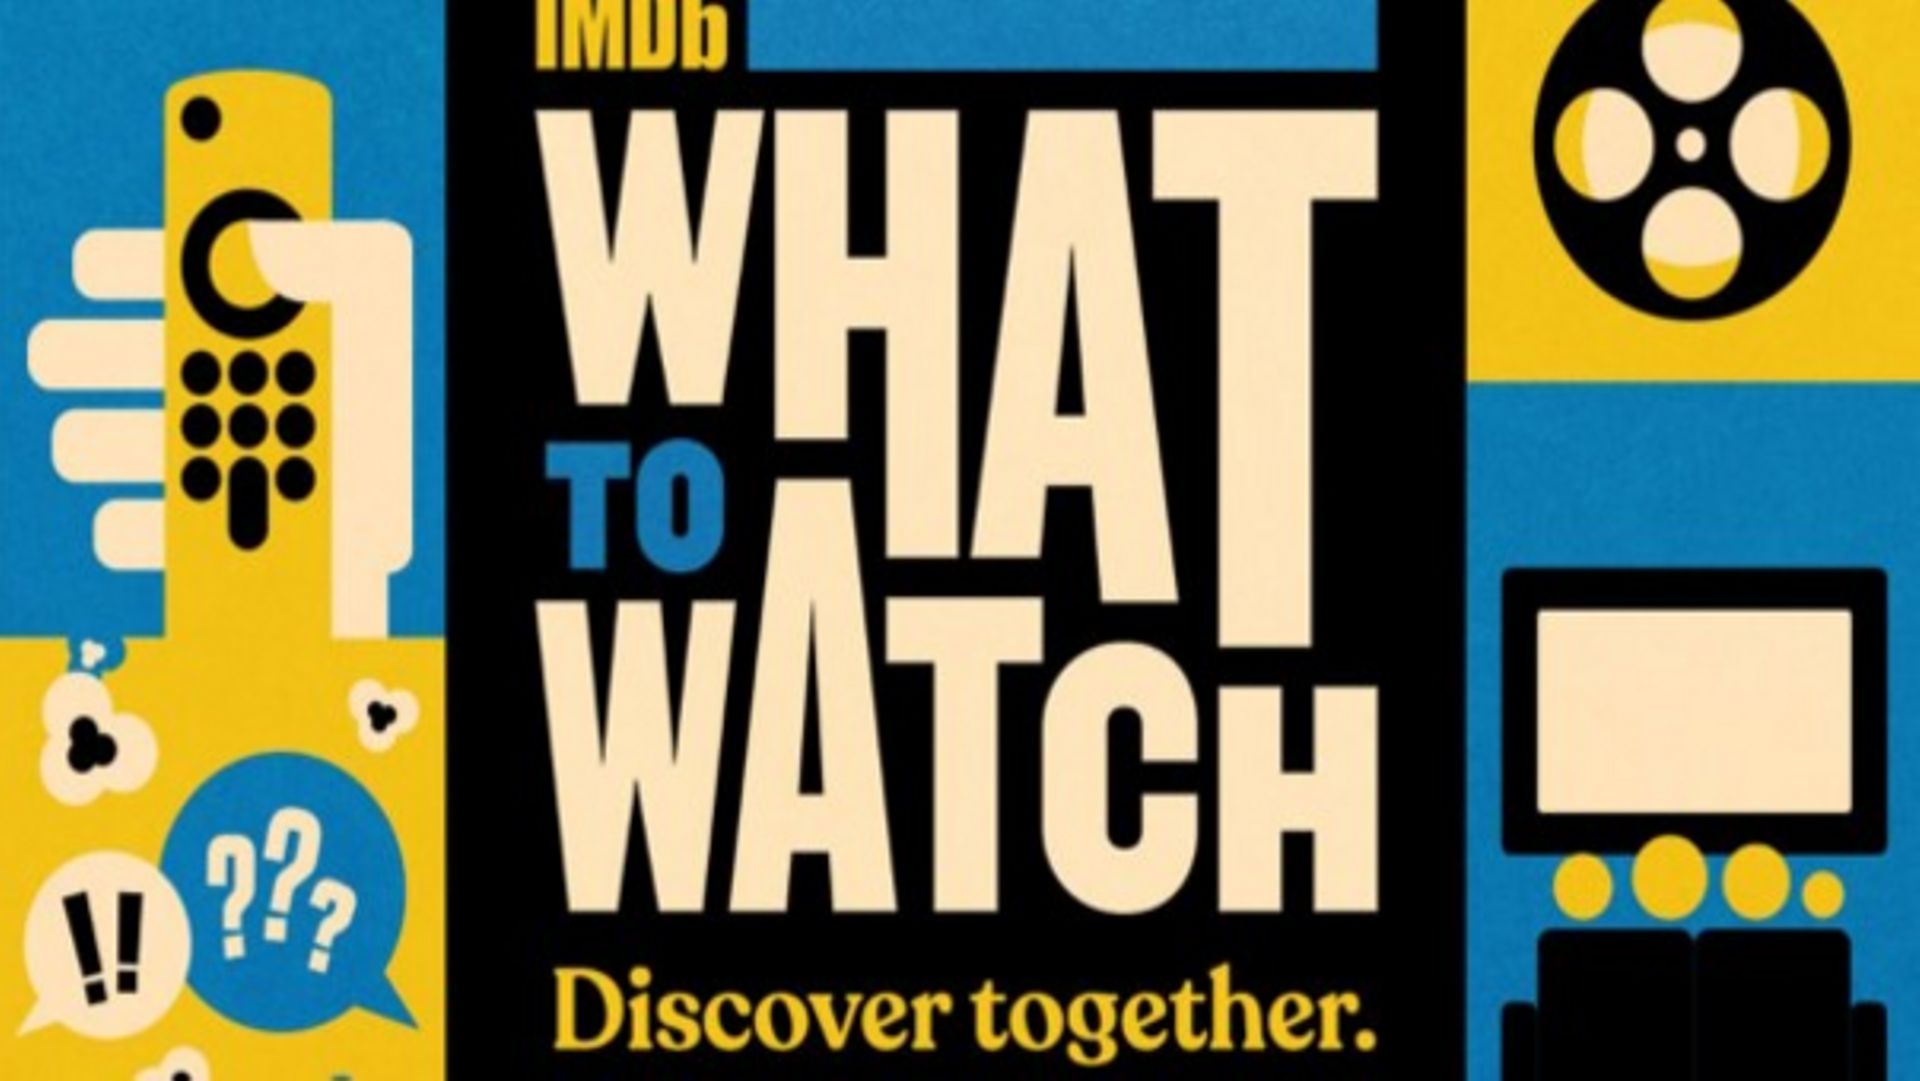 IMDb a dévoilé sa nouvelle application uniquement disponible sur les Fire TV d’Amazon, aux Etats-Unis.